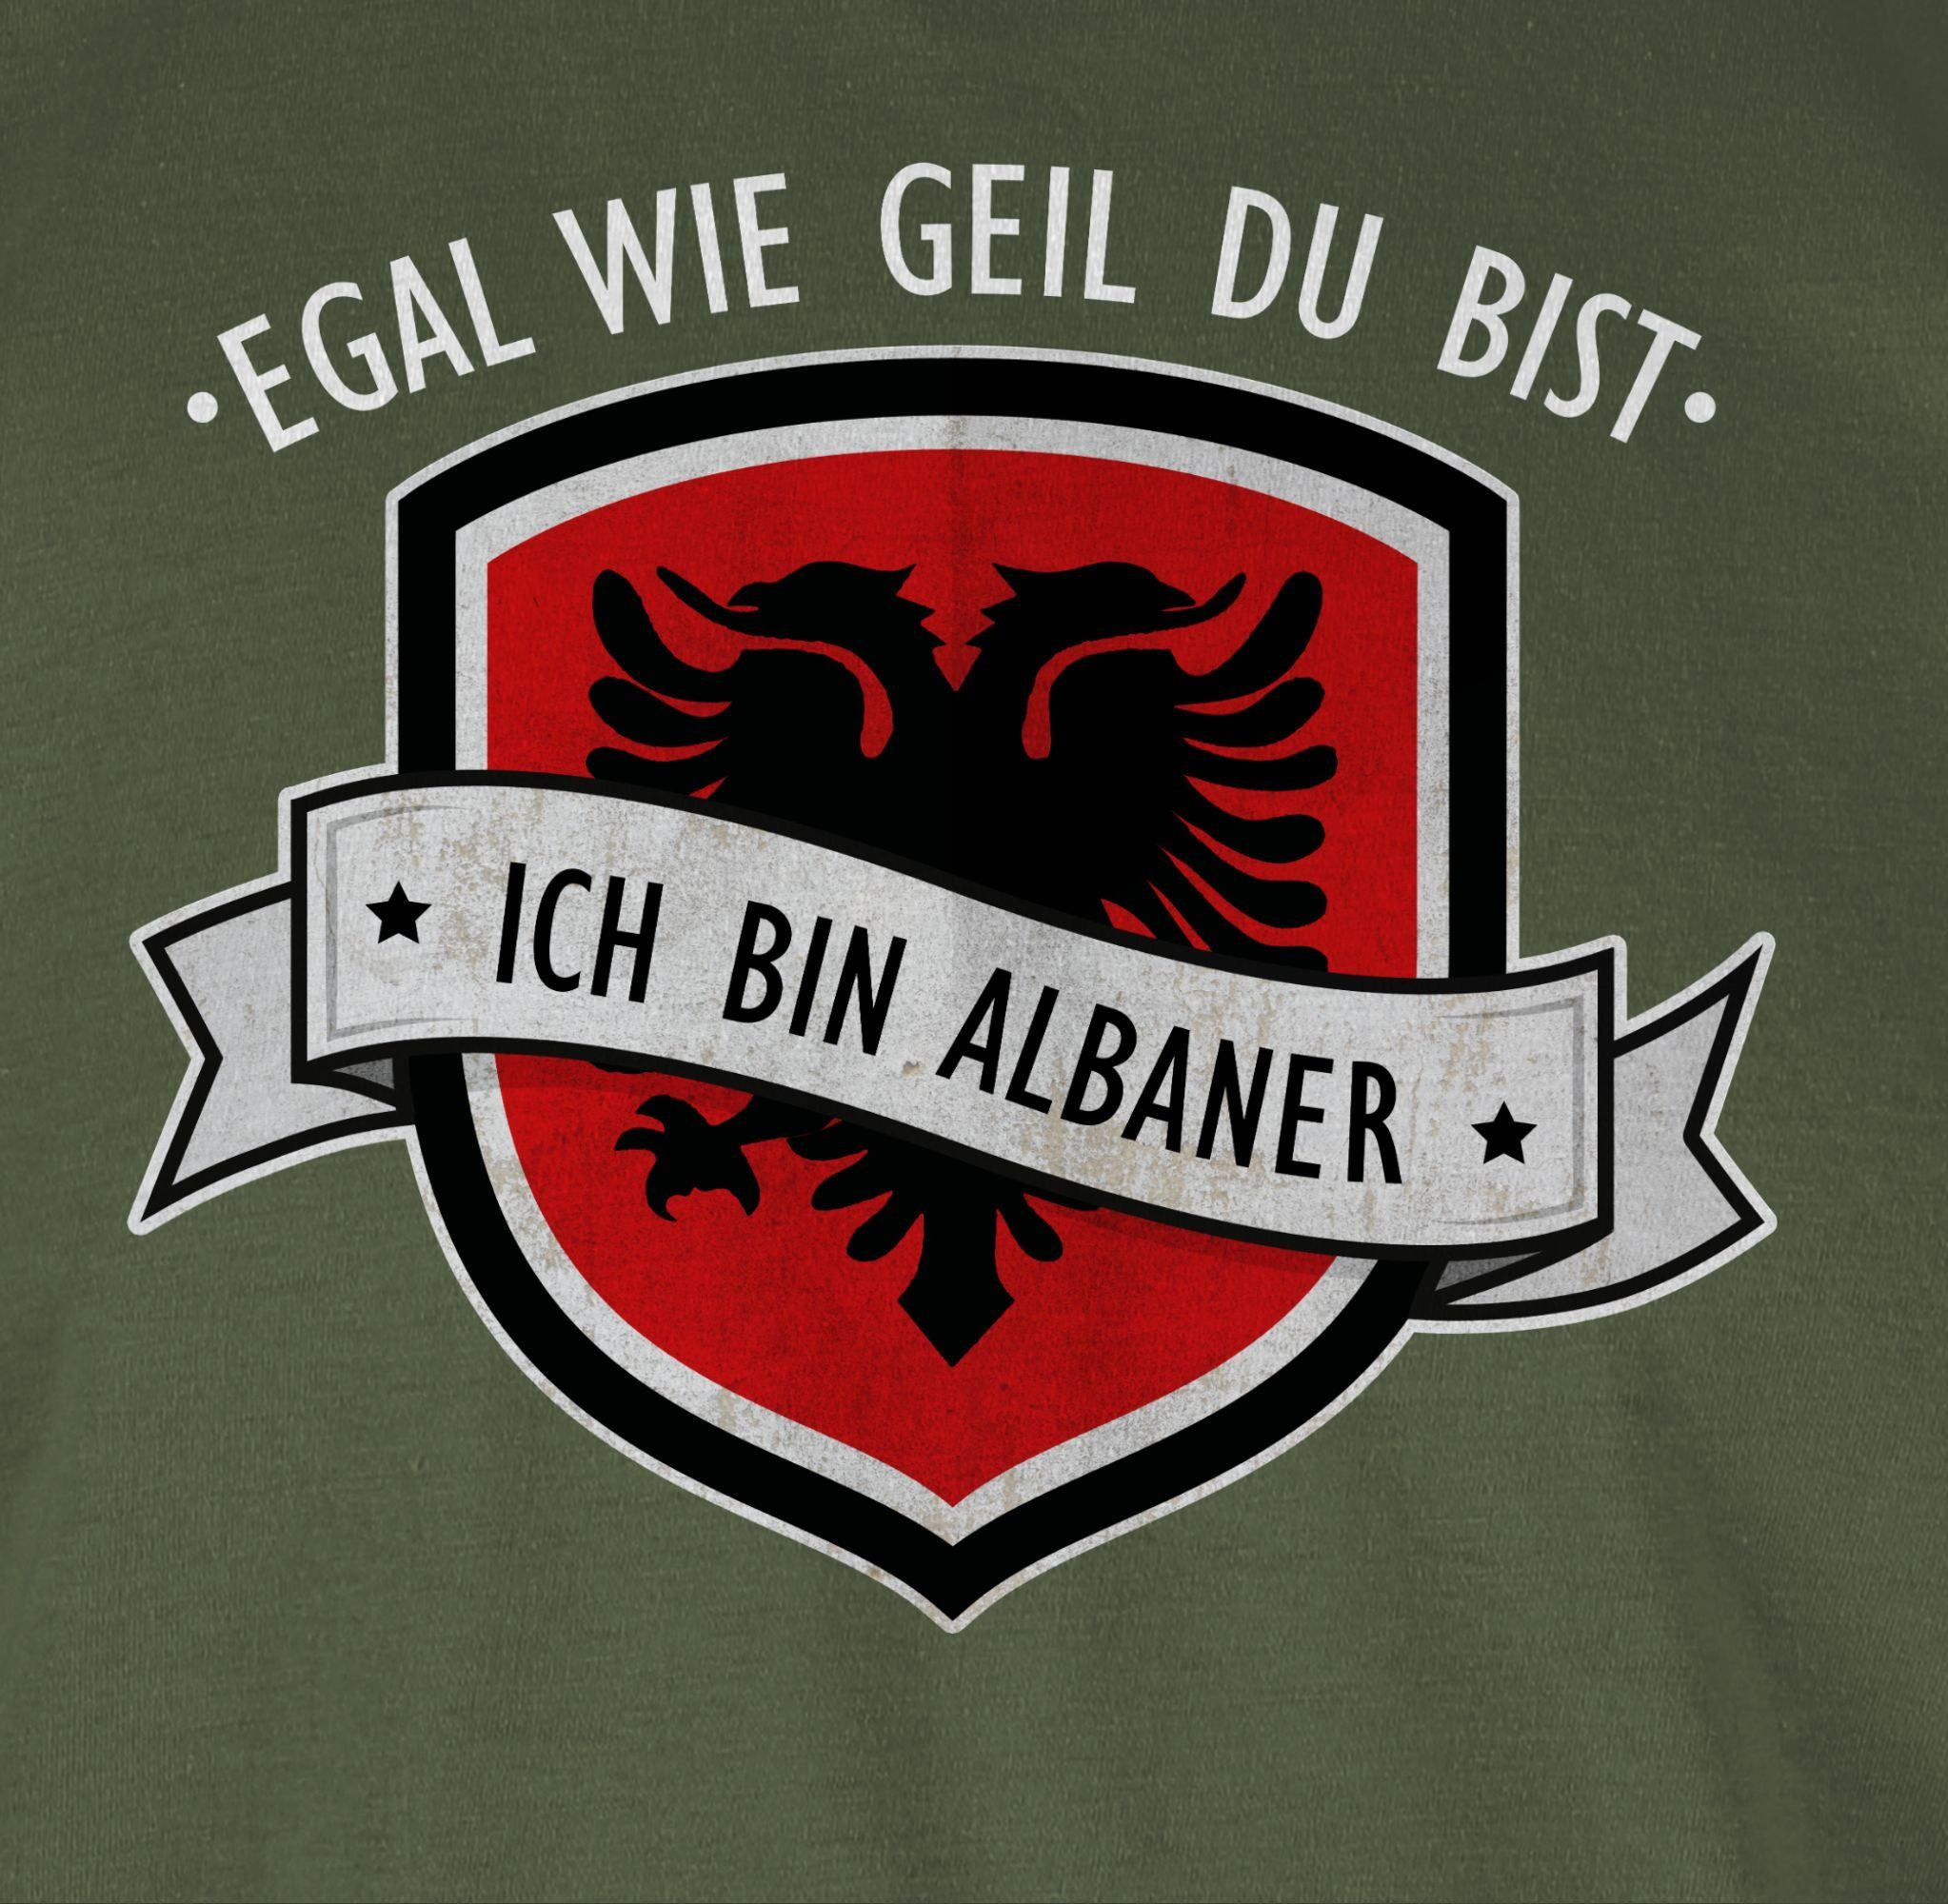 wie Länder bin geil Egal Army Albaner Wappen Grün bist 3 ich du Shirtracer T-Shirt -